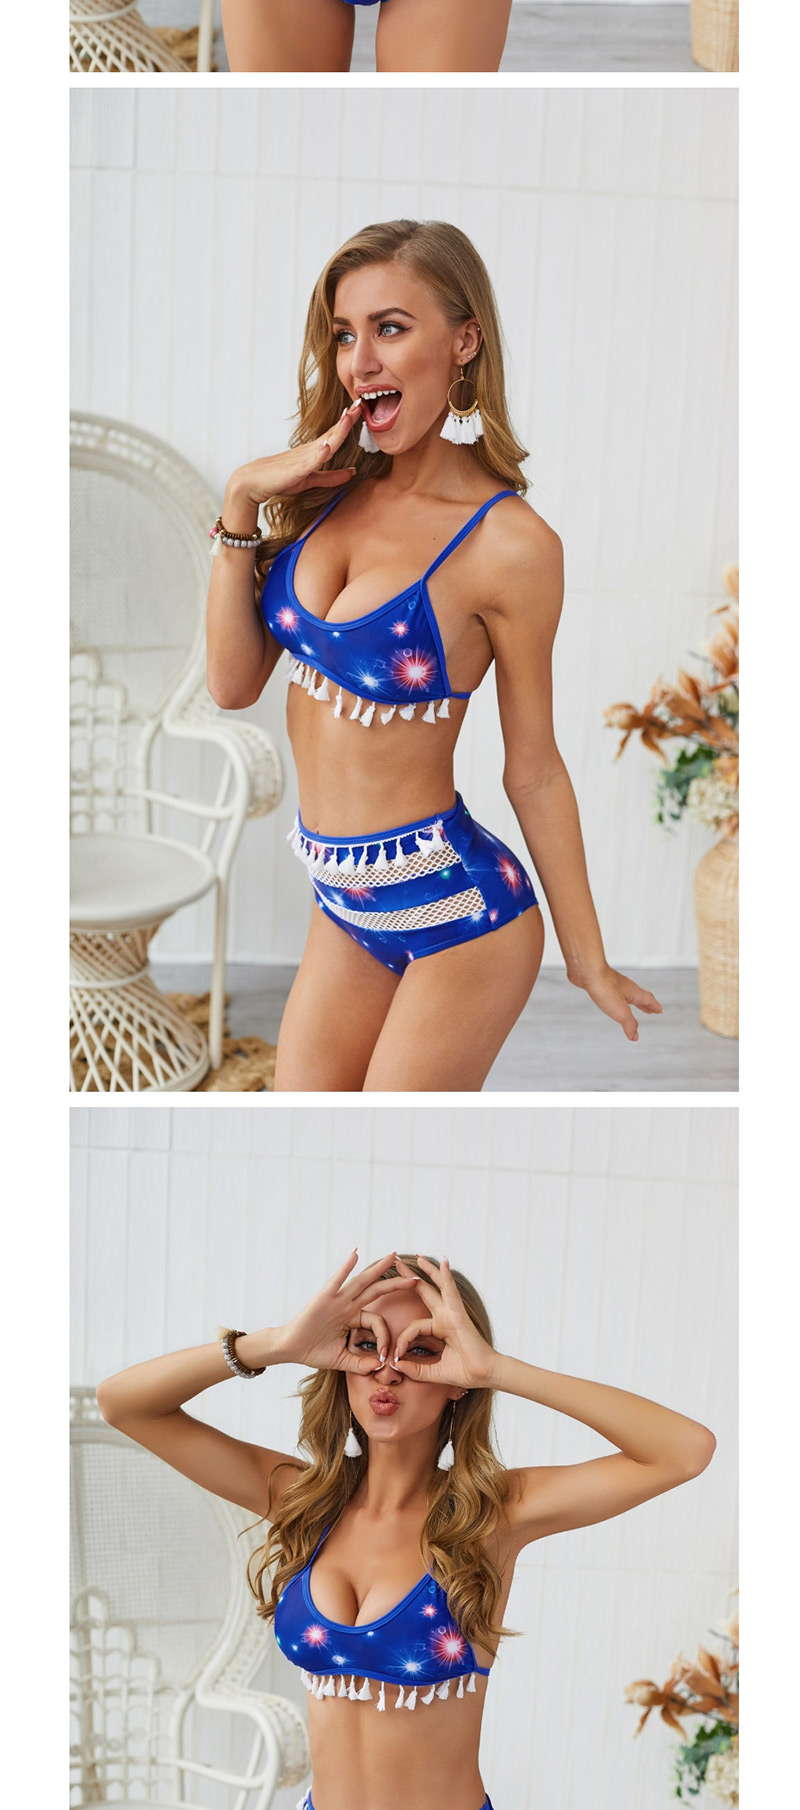  Blue Starry B Fringe Stitching Bikini Two-piece,Bikini Sets